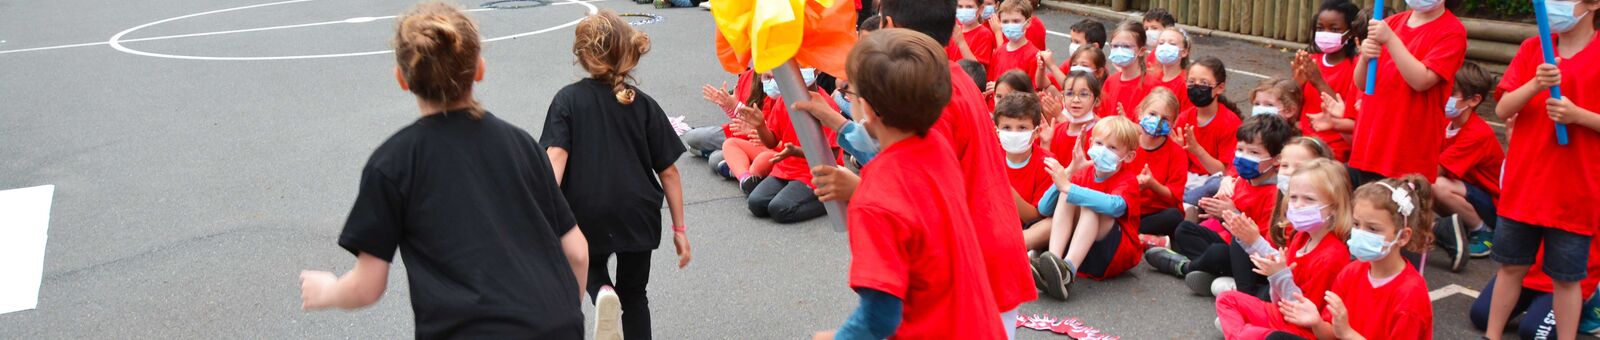 Des enfants habillés en rouge portent une flamme factice devant un public d'enfants